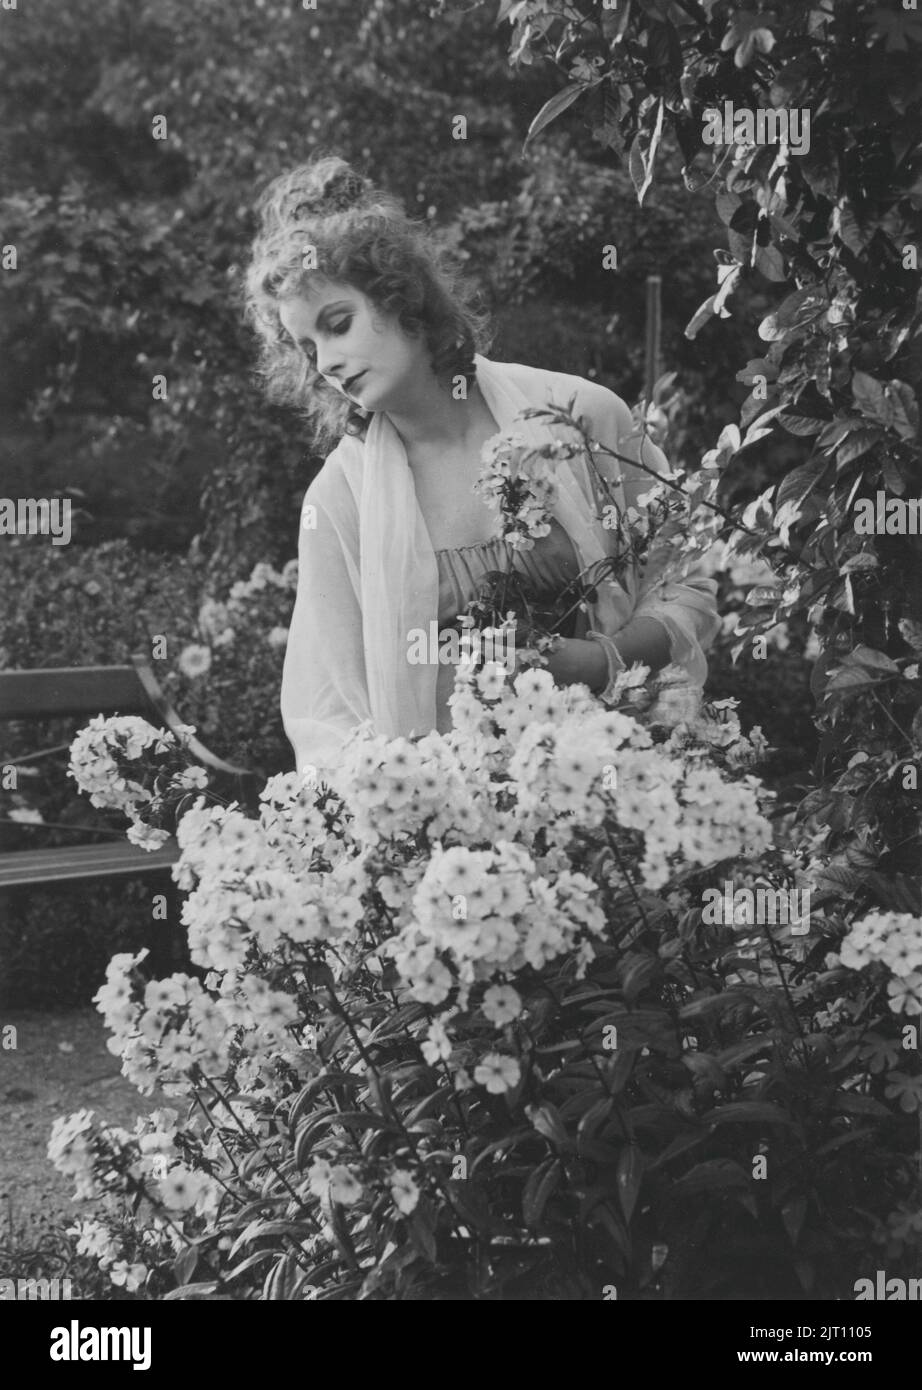 L'actrice suédoise Greta Garbo. 1905-1990. Actrice suédoise avec ses jours de gloire pendant les 1920s et 1930s. Elle a pris sa retraite de l'écran à l'âge de 35 ans après avoir agi dans 28 films. Photo en vedette dans le film Expiation of Gosta Berling de 1924 basé sur un roman de Selma Lagerlof. Banque D'Images